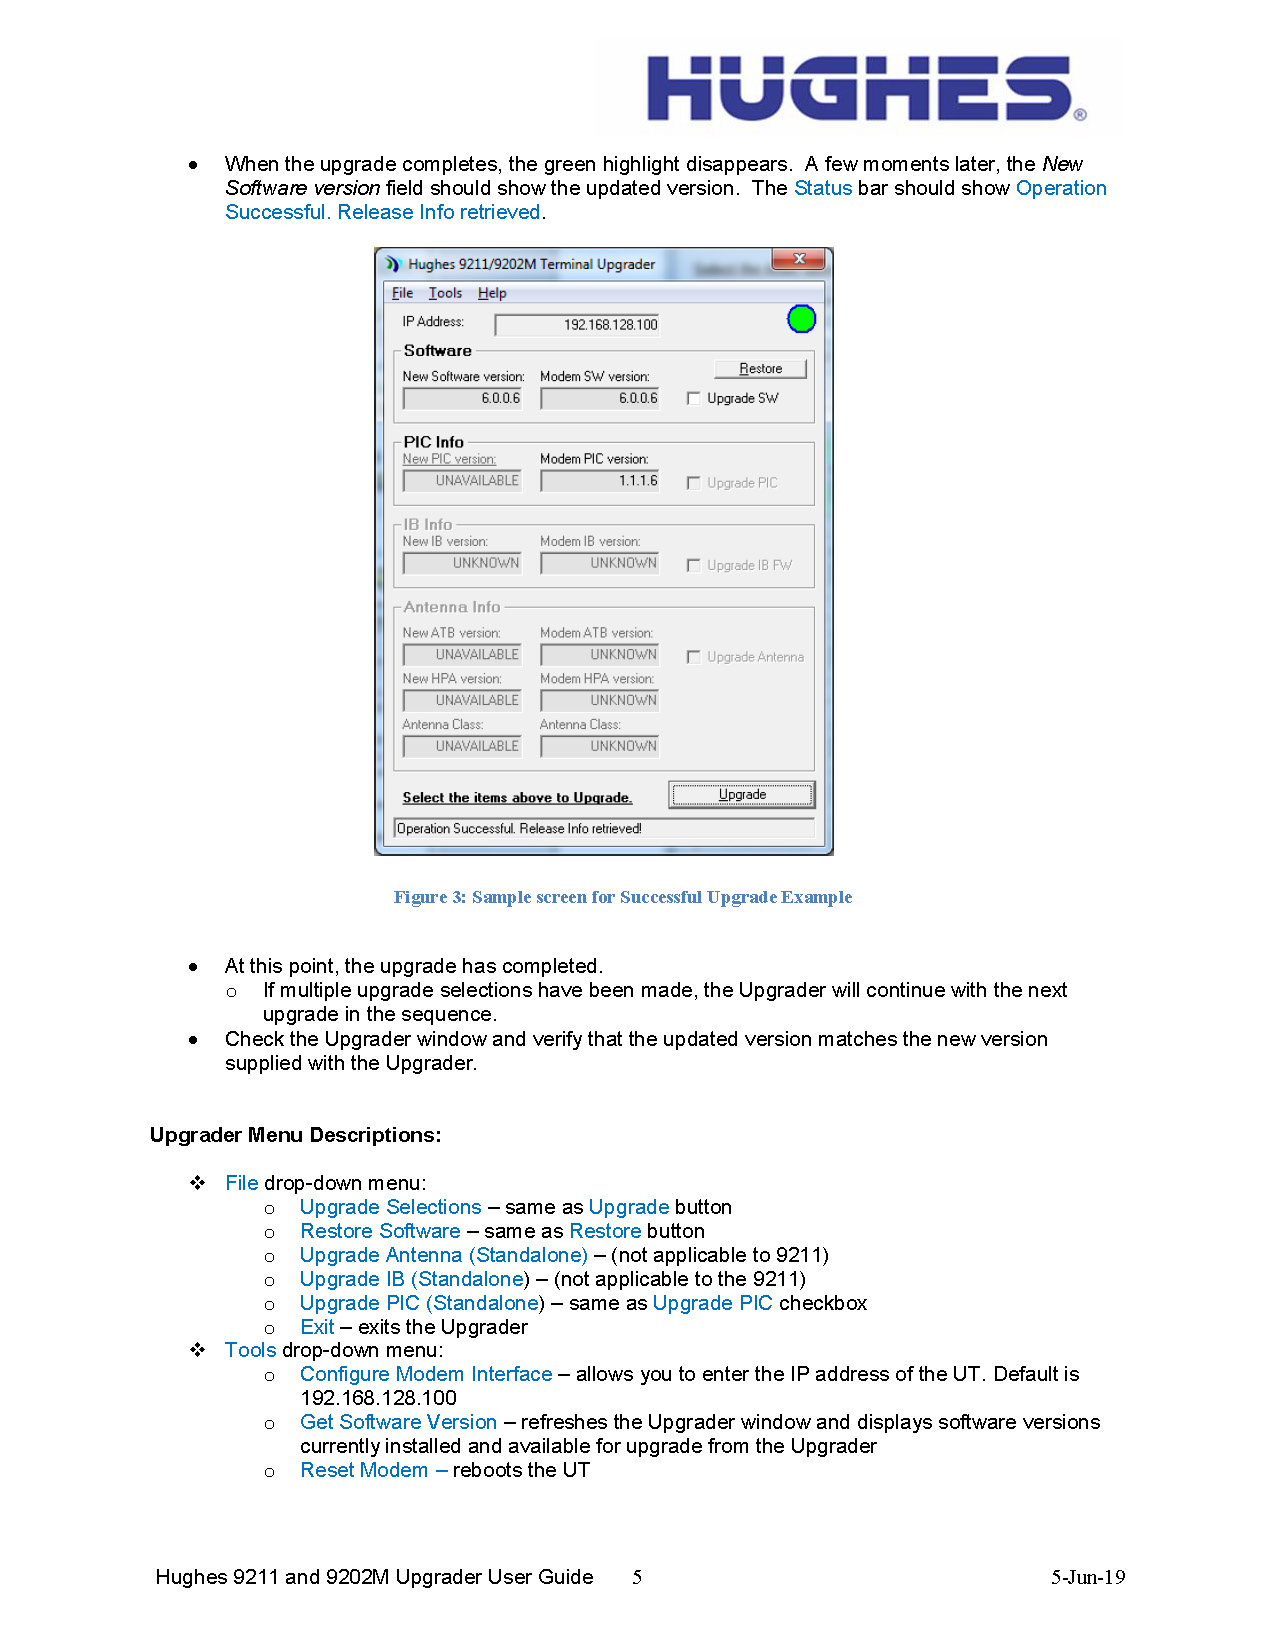 Hughes_9211_Upgrader_User_Instructions_PC_v2.pdf_Page_5.jpg